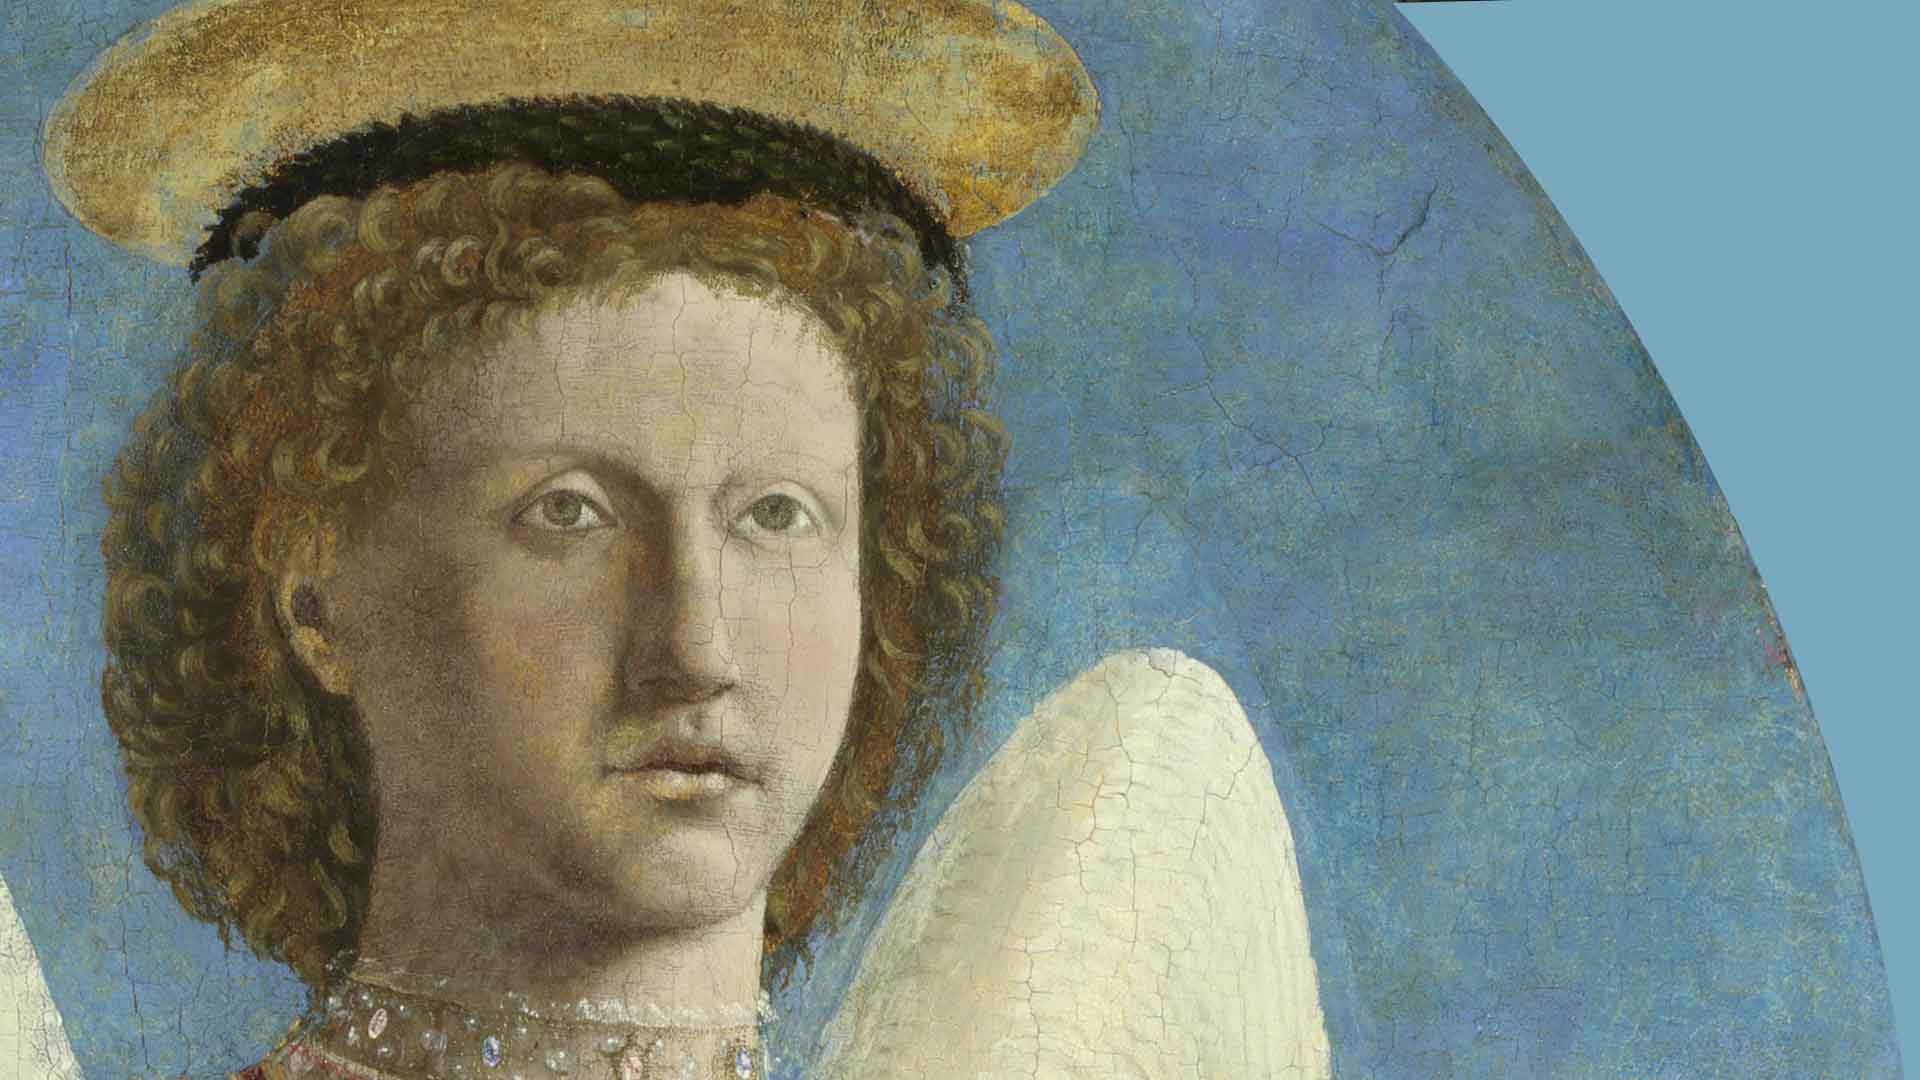 L'immagine è un dettaglio del dipinto di San Michele di Piero della Francesca e raffigura un angelo dipinto, con capelli ricci biondi, vestito con abiti decorati, su sfondo blu cielo e ala bianca visibile.